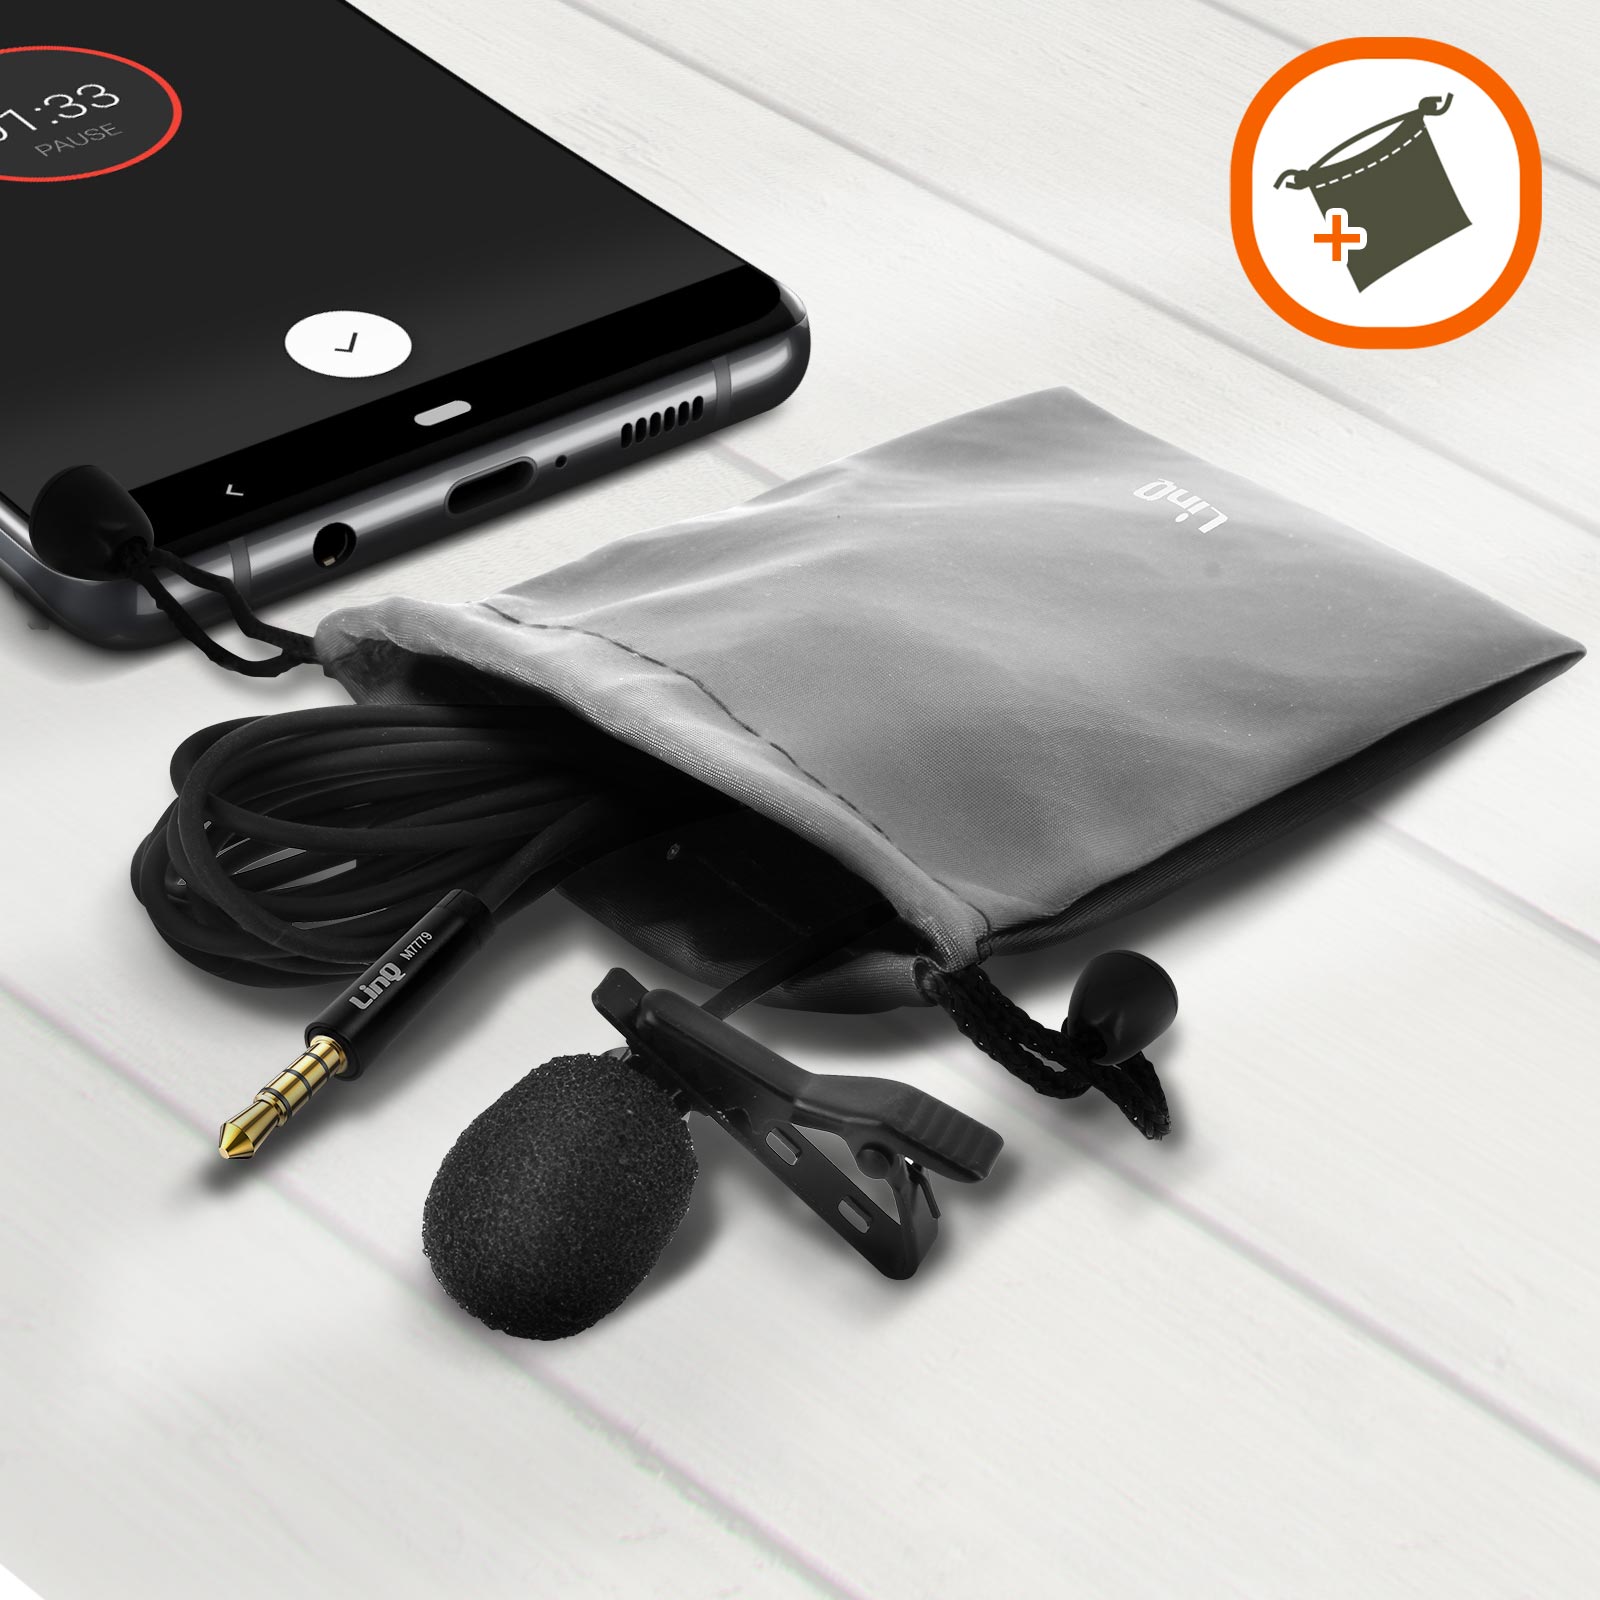 Micro-Cravate Smartphone avec Réduction du Bruit, Prise Jack 3.5mm